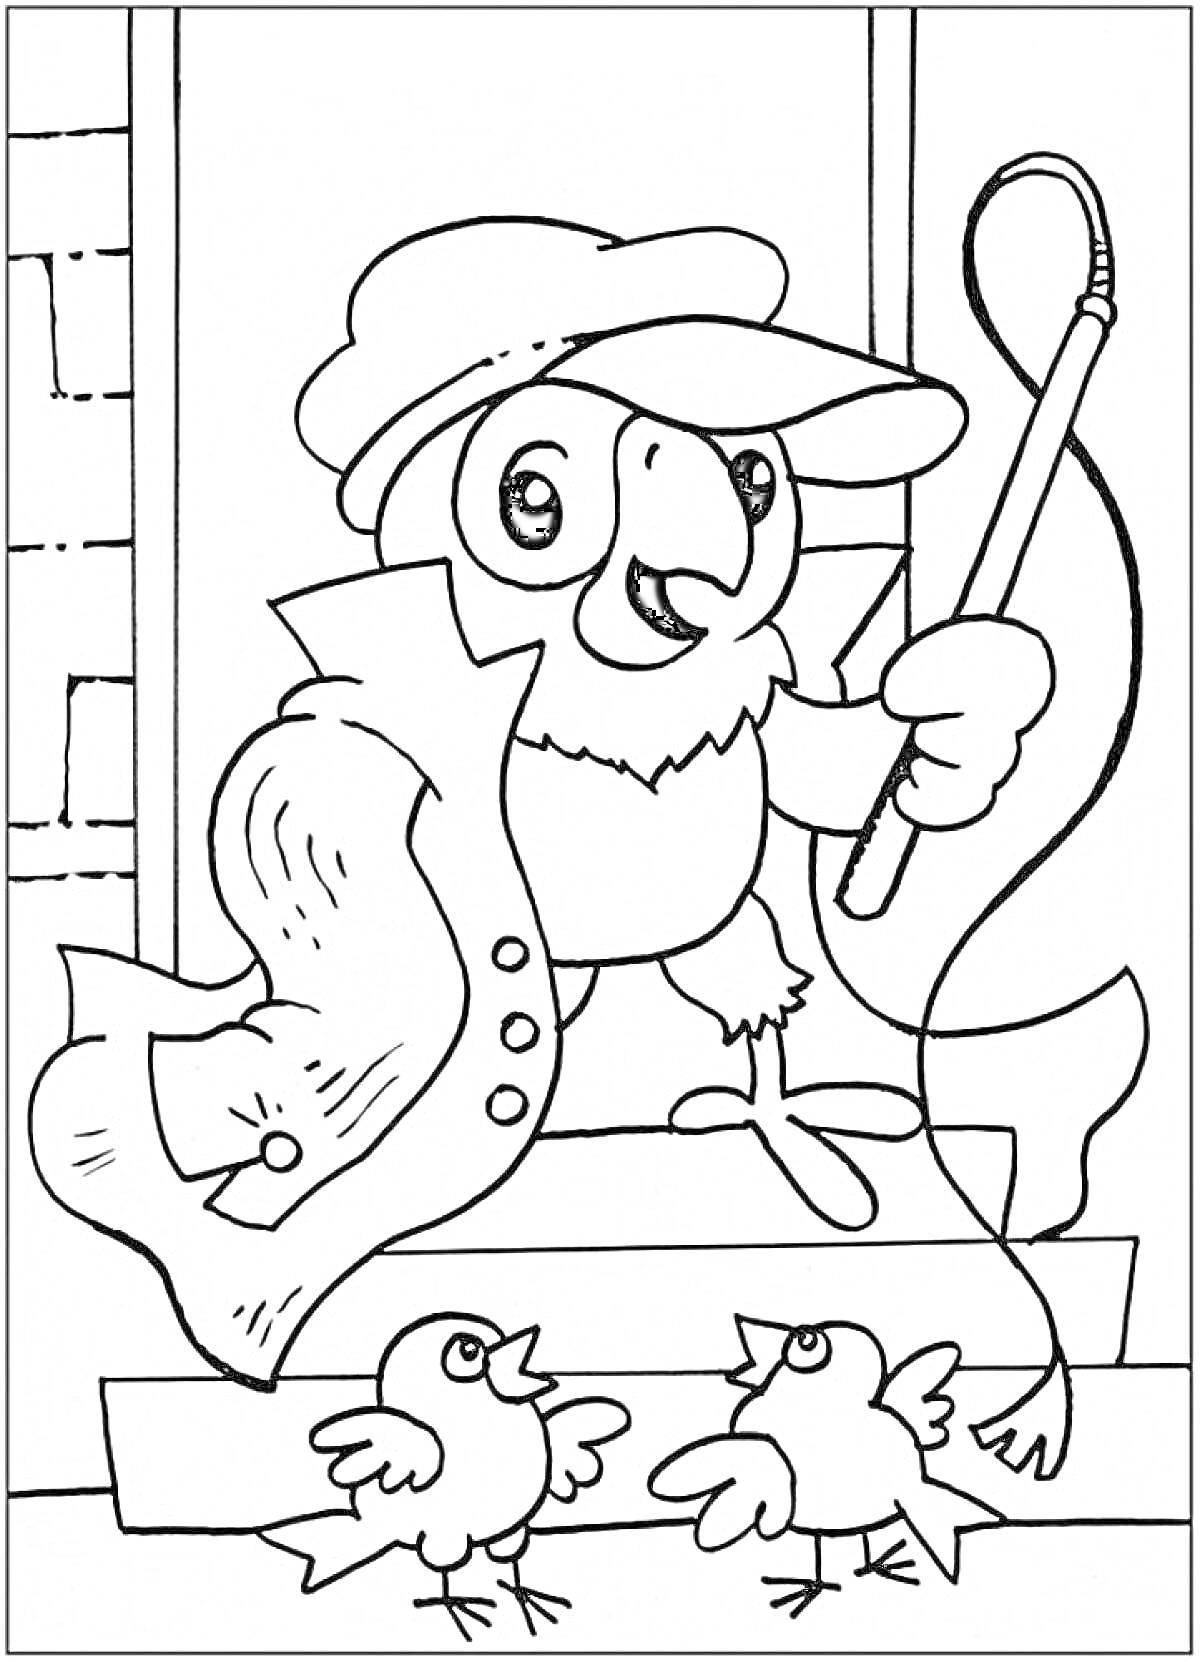 Попугай Кеша в шляпе и накидке с тростью, на фоне домика, с двумя птичками